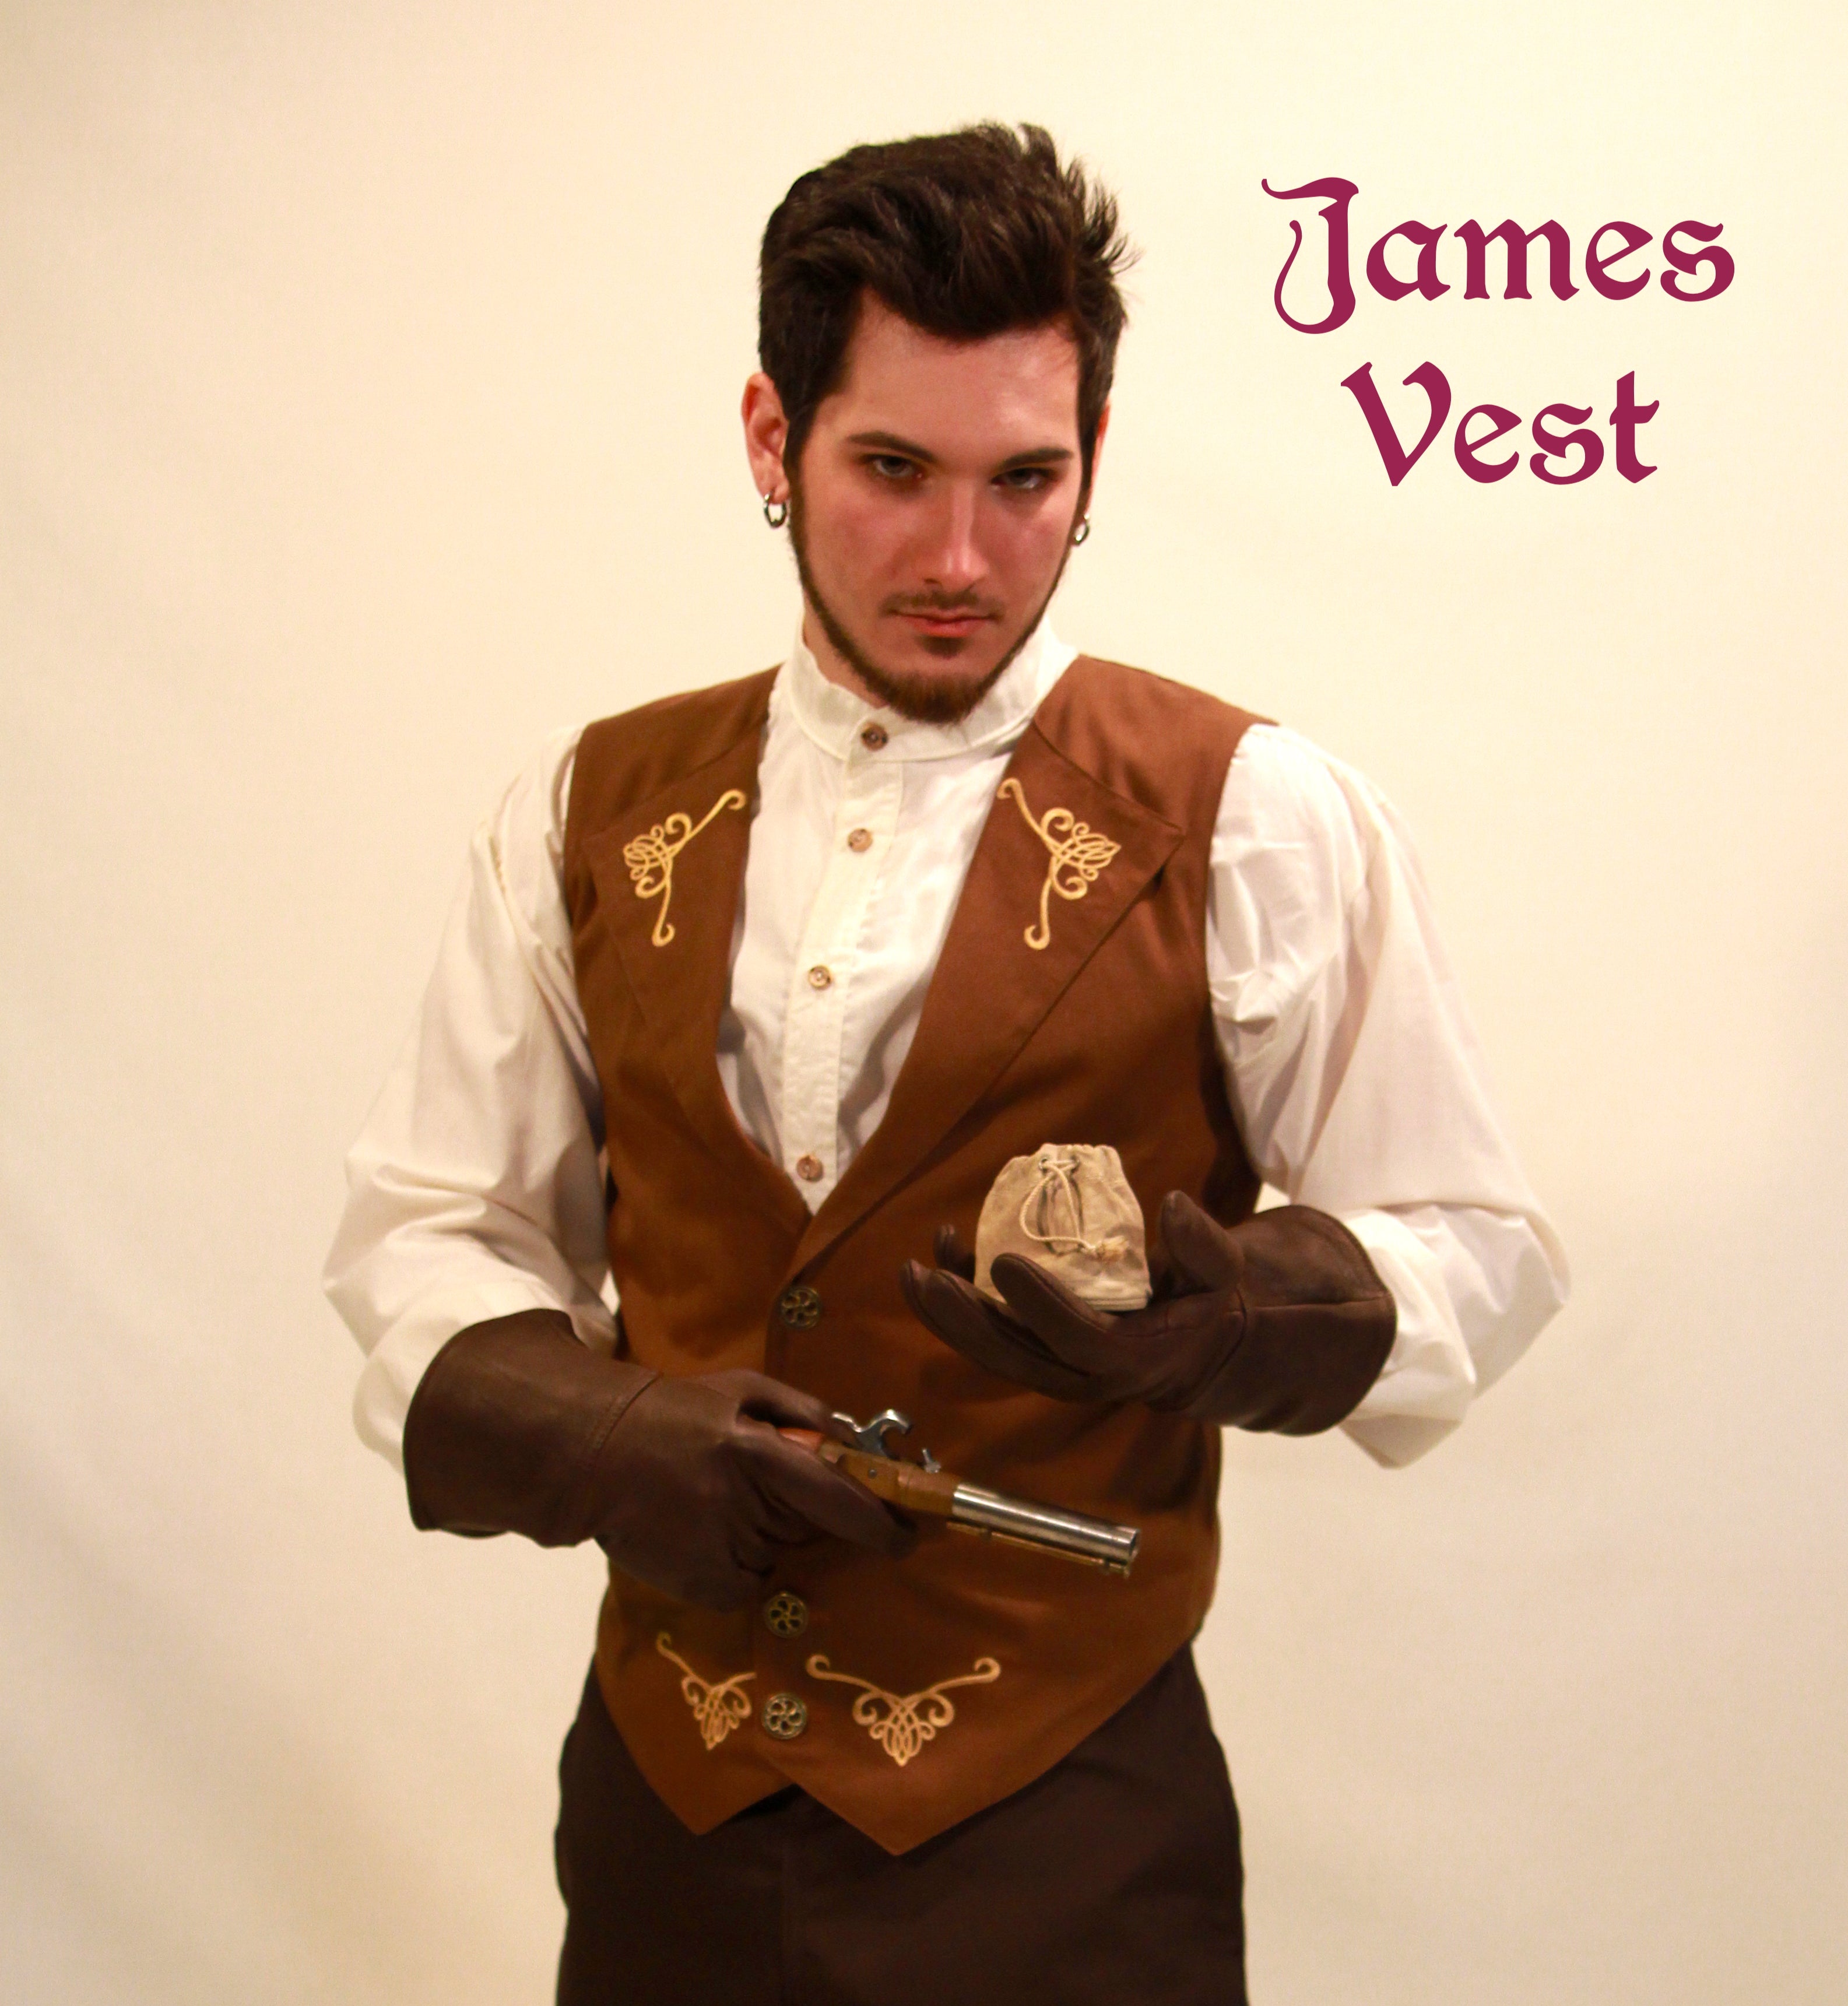 Celtic Inverness Vest / James Vest | Highland Games Vest |  Threads of Time